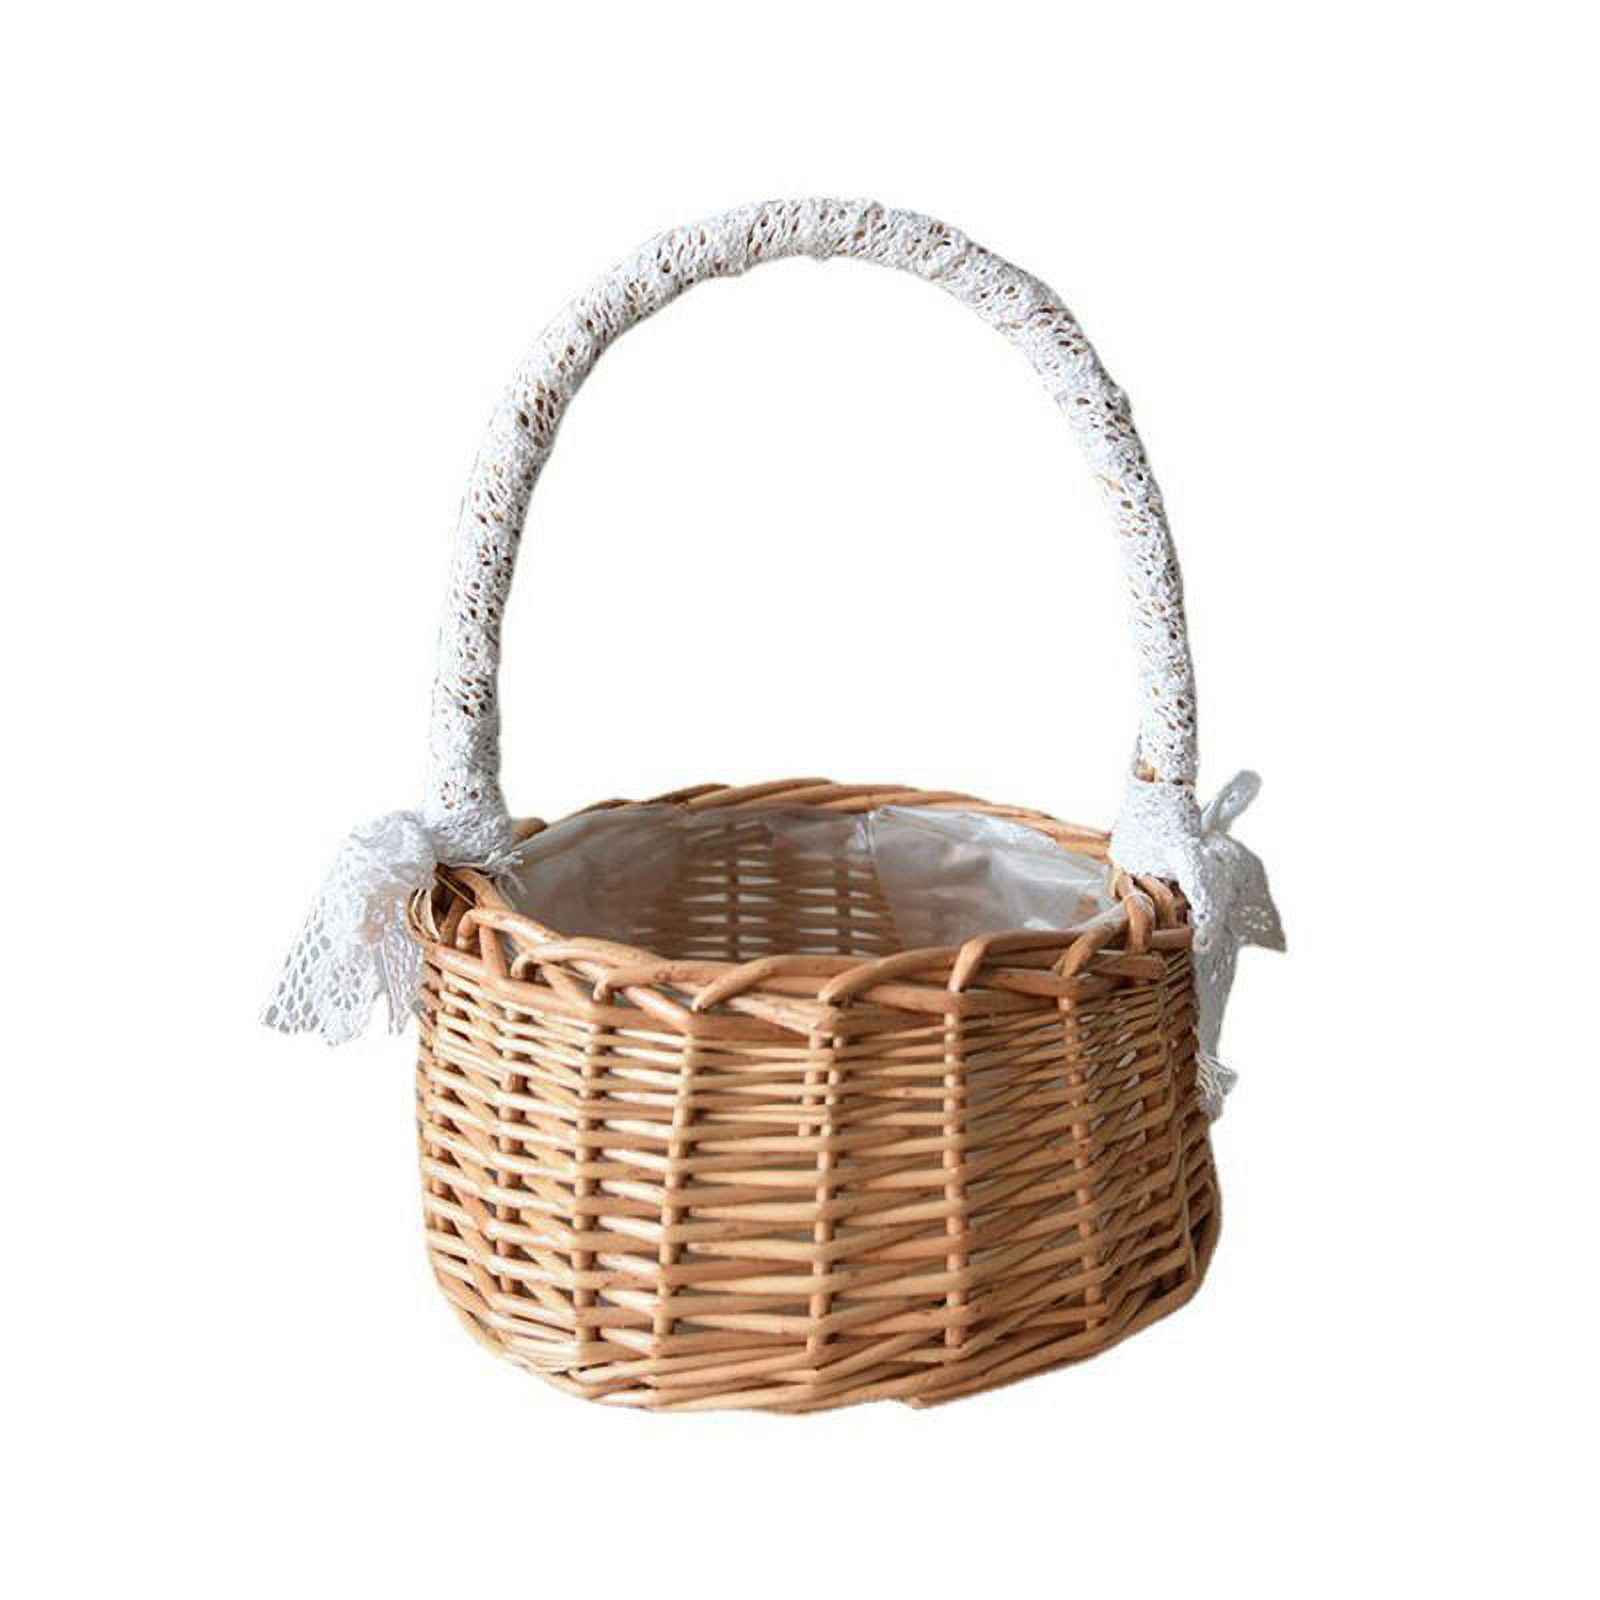 Cotton Thread Bride Wedding Bathroom Basket Supplies Woven Handle